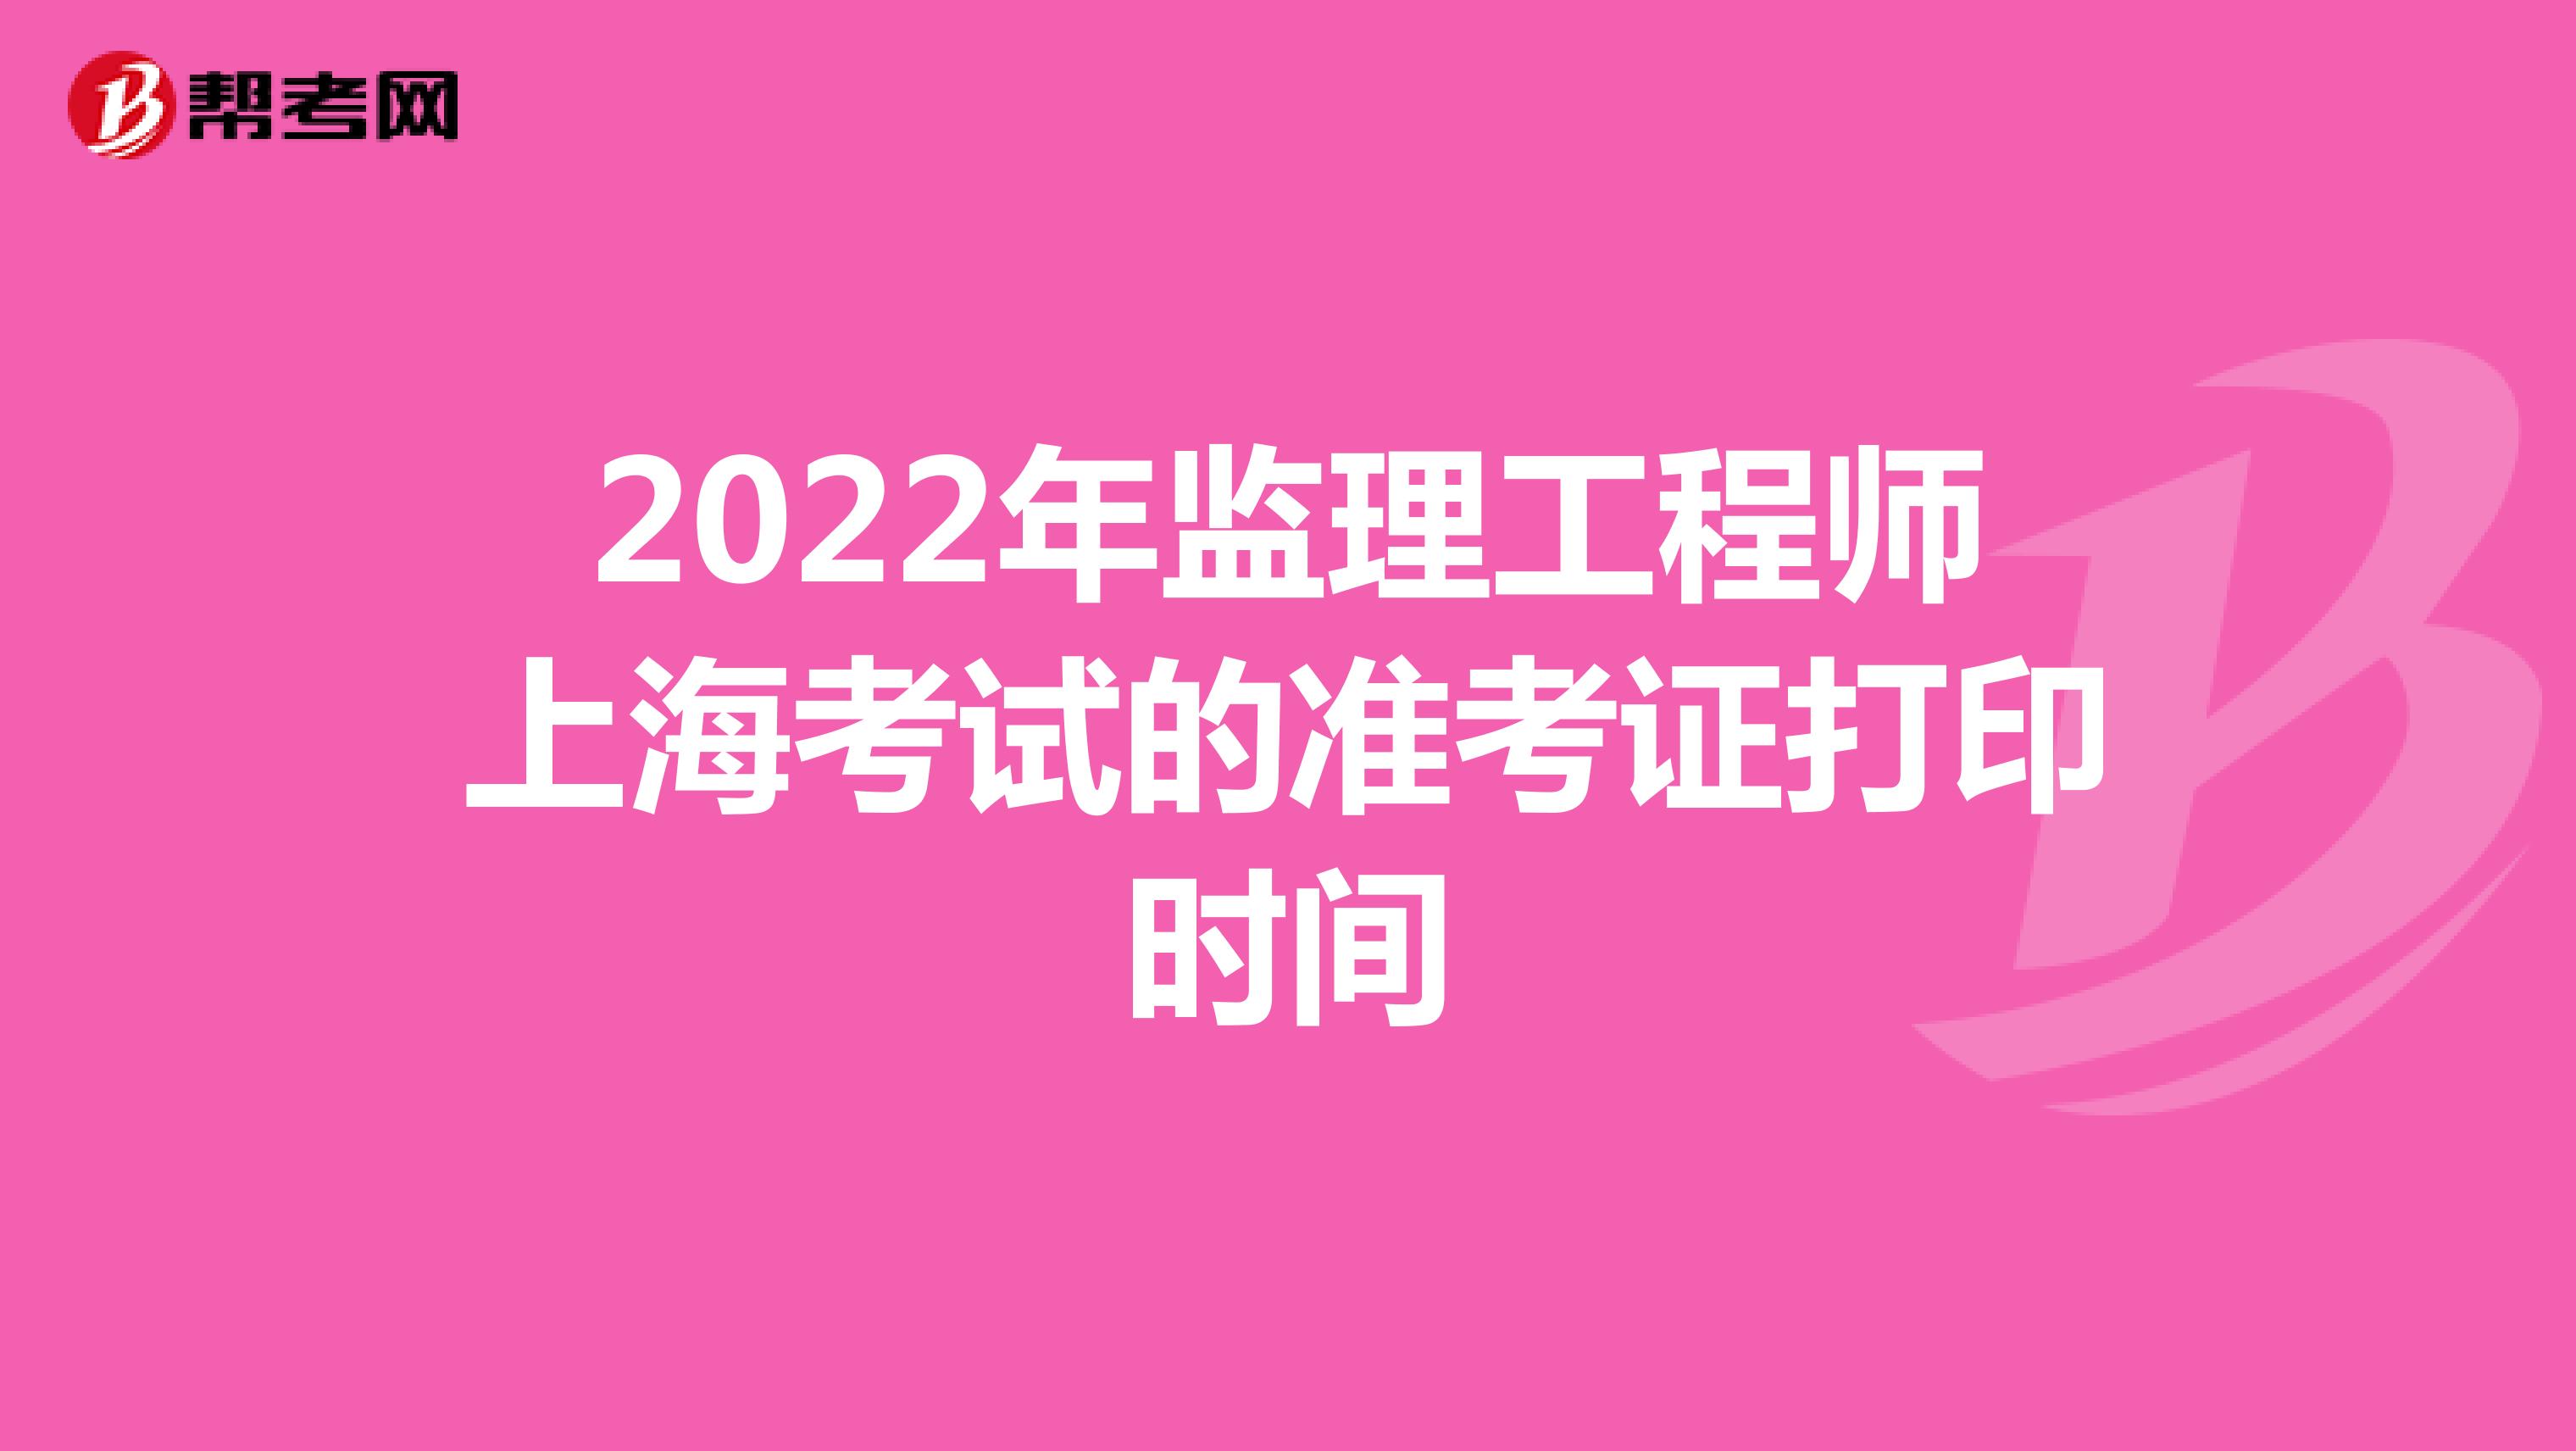 2022年监理工程师上海考试的准考证打印时间